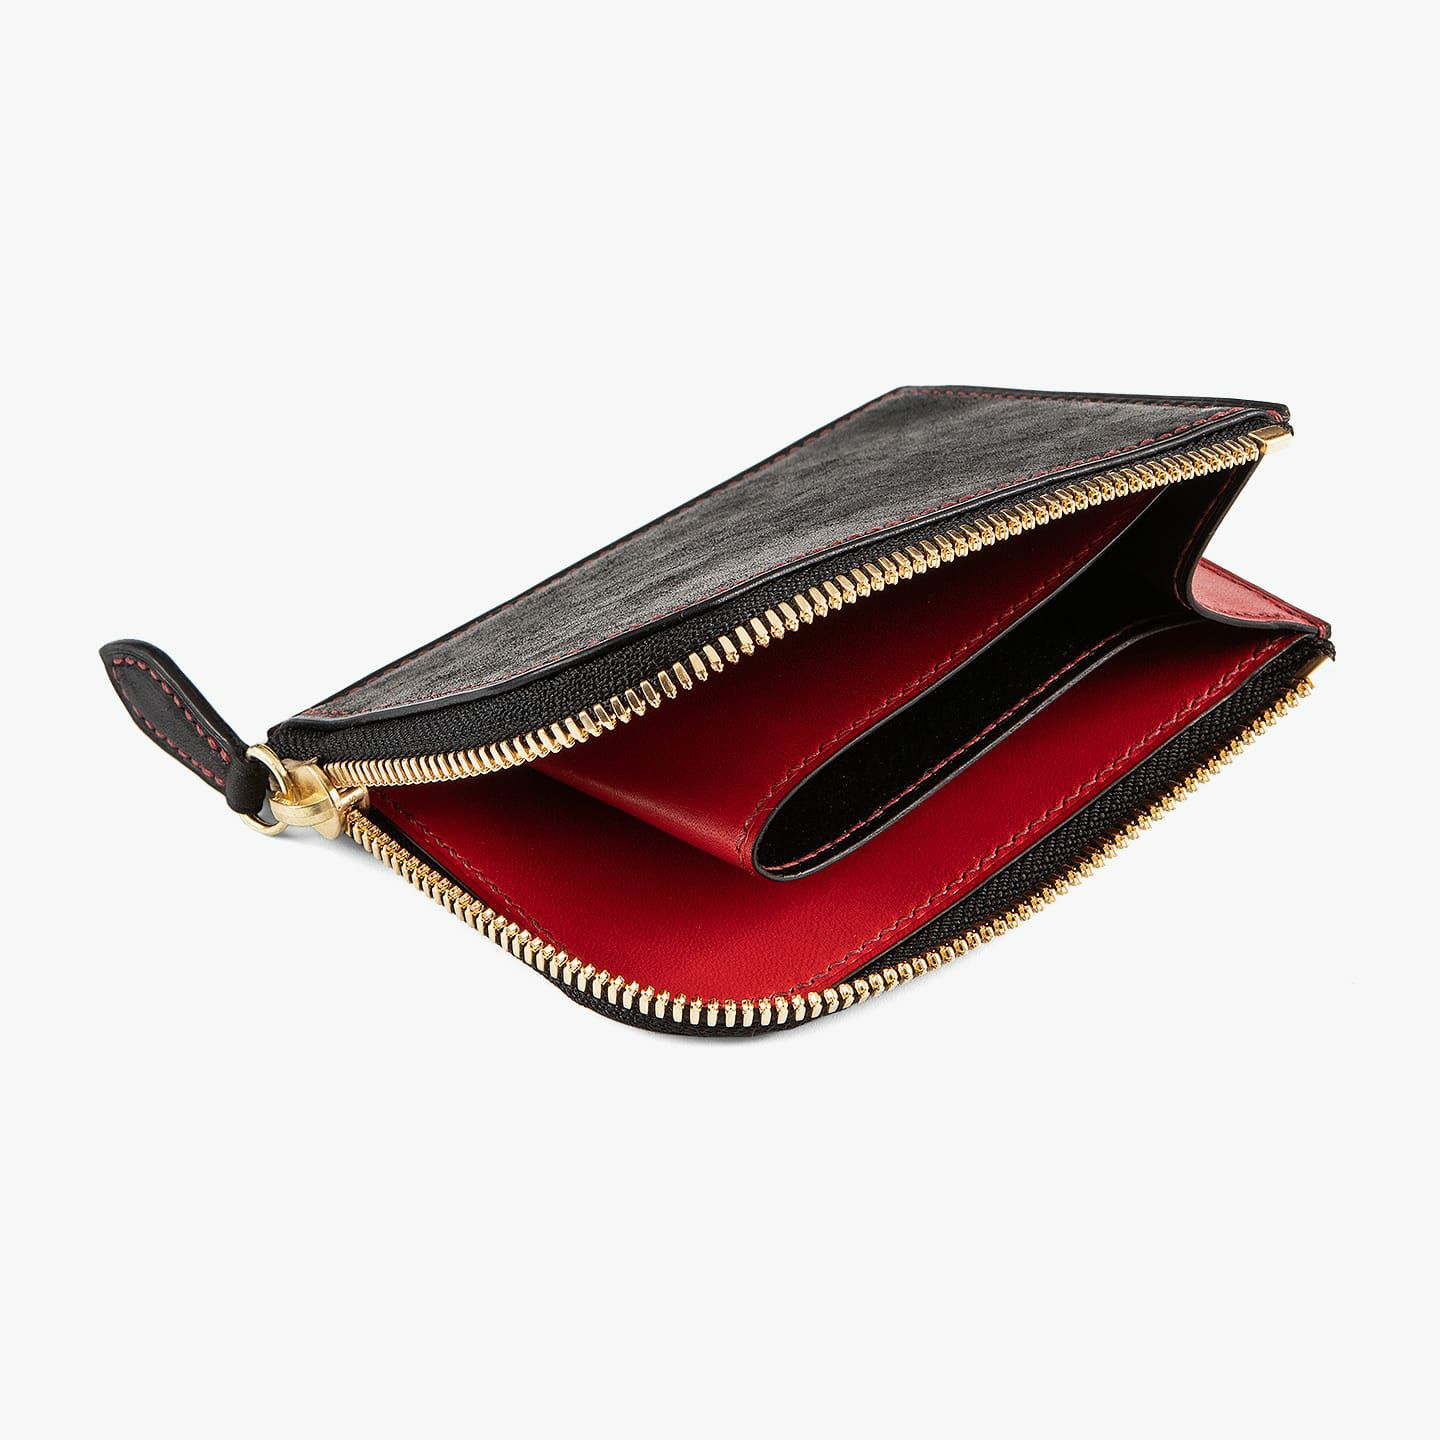 外装（マルゴー）：Black、内装＆装飾（イングラサット）Red、糸色：Bordeaux、ファスナー：Gold